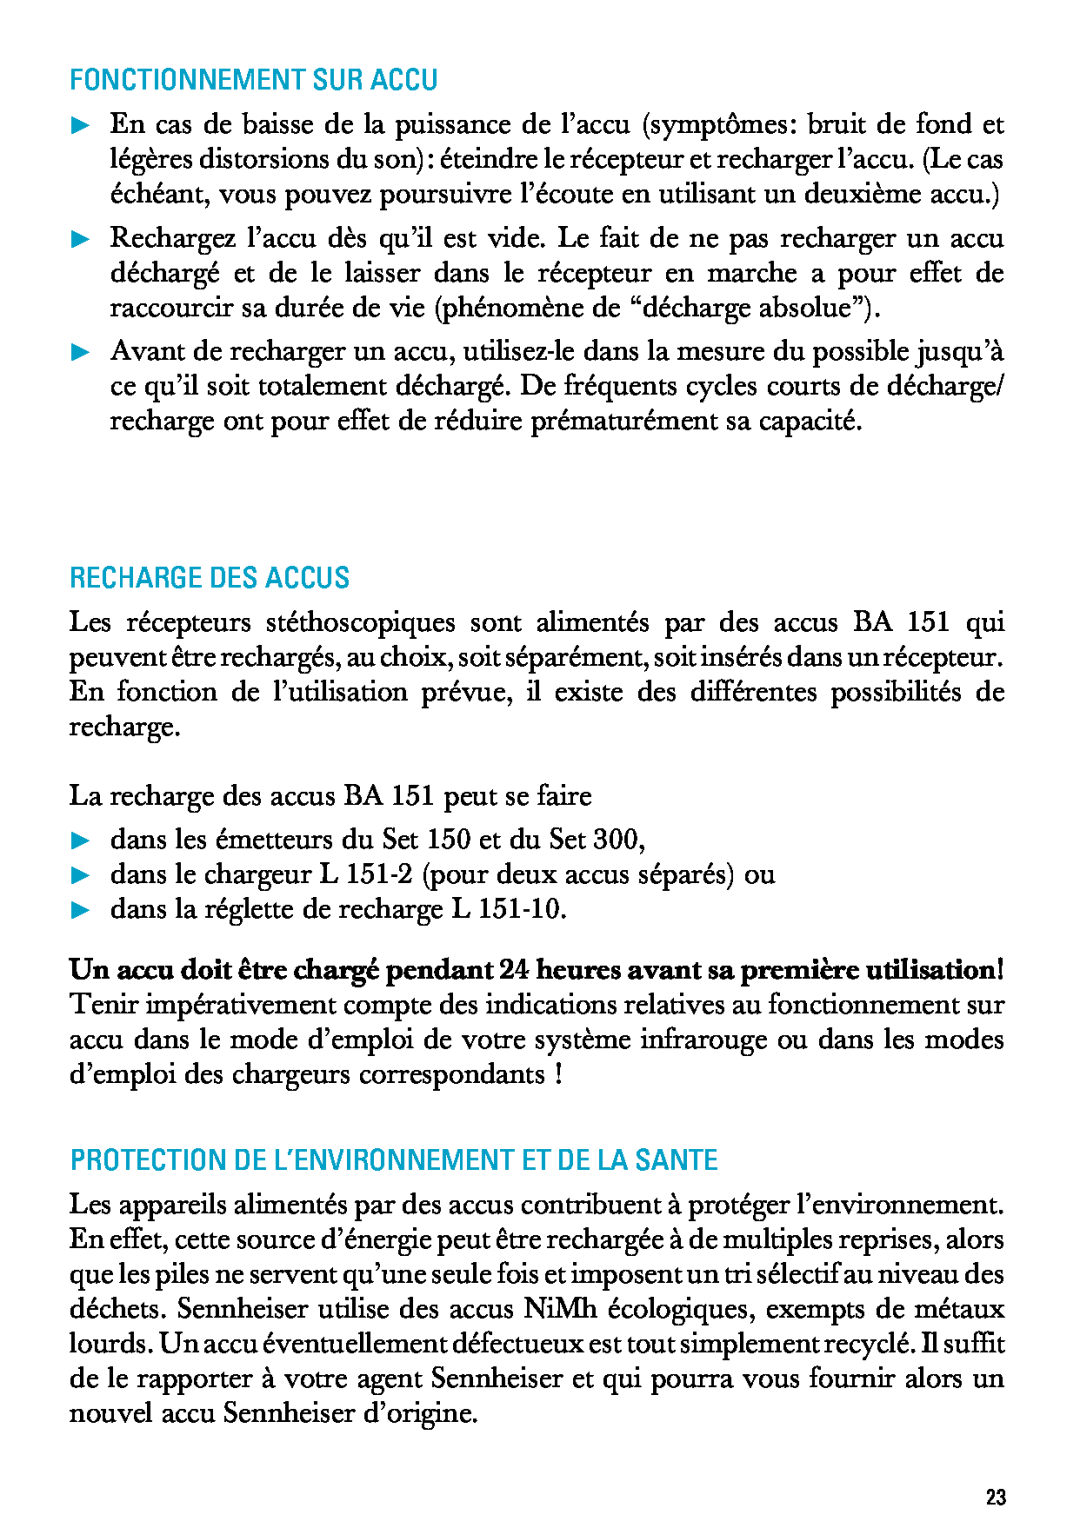 Sennheiser RI 300 manual Fonctionnement Sur Accu, Recharge Des Accus, Protection De L’Environnement Et De La Sante 